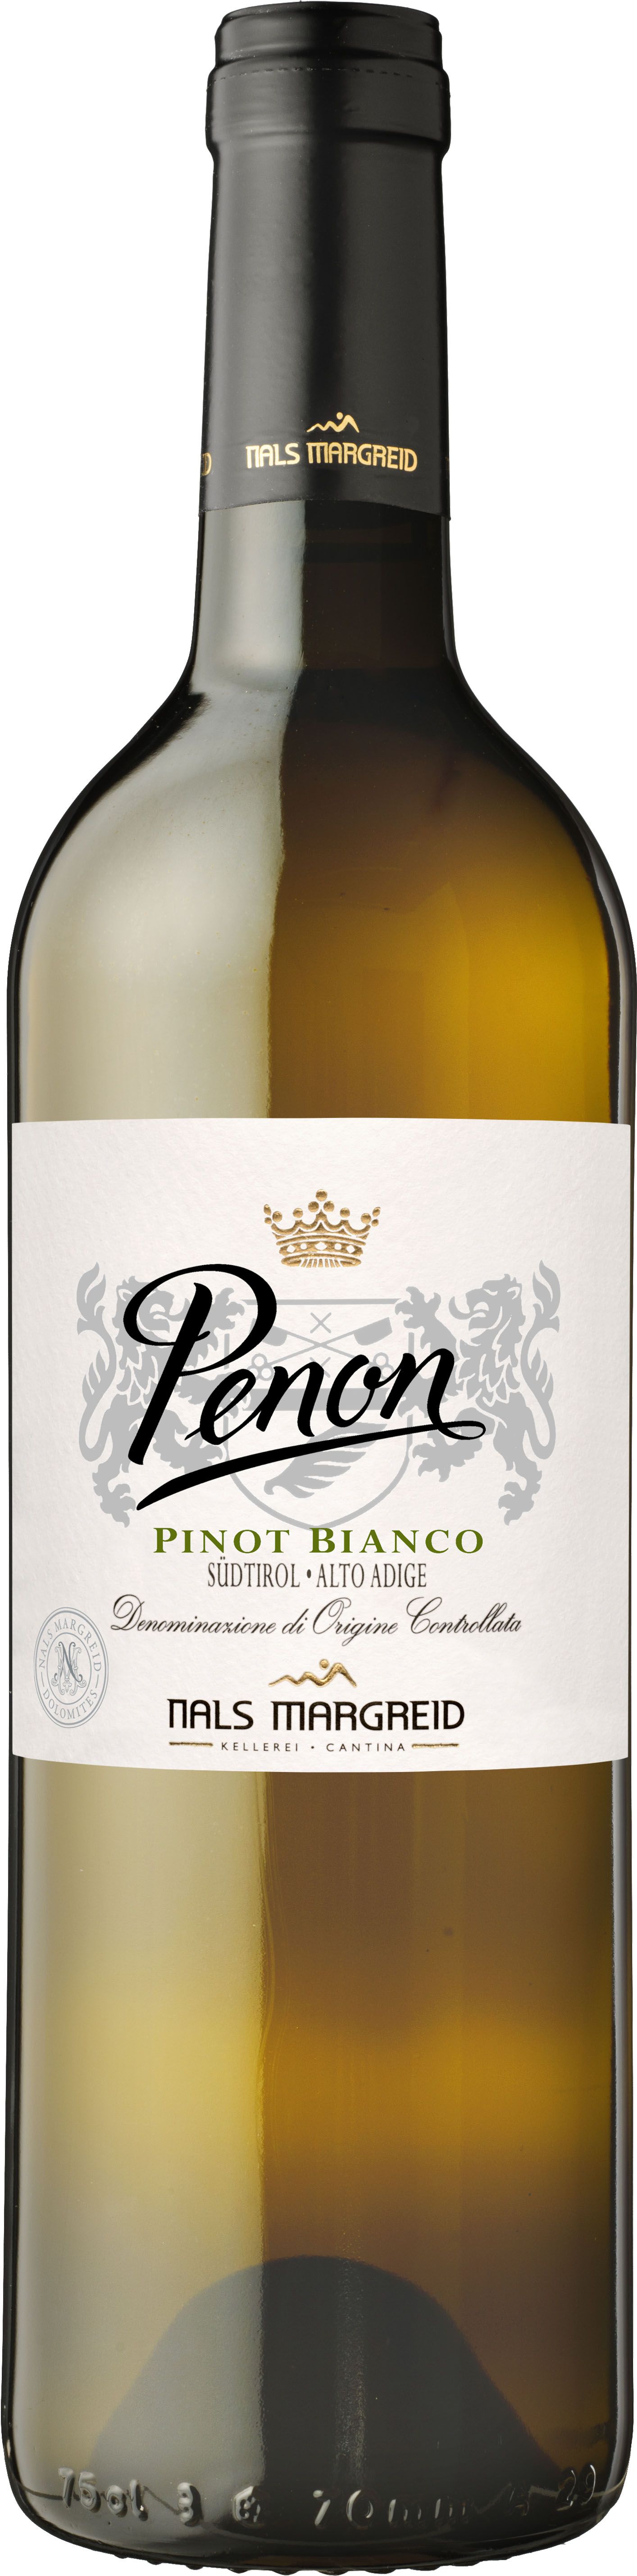 Nals Margreid, Penon Pinot Bianco, 2014